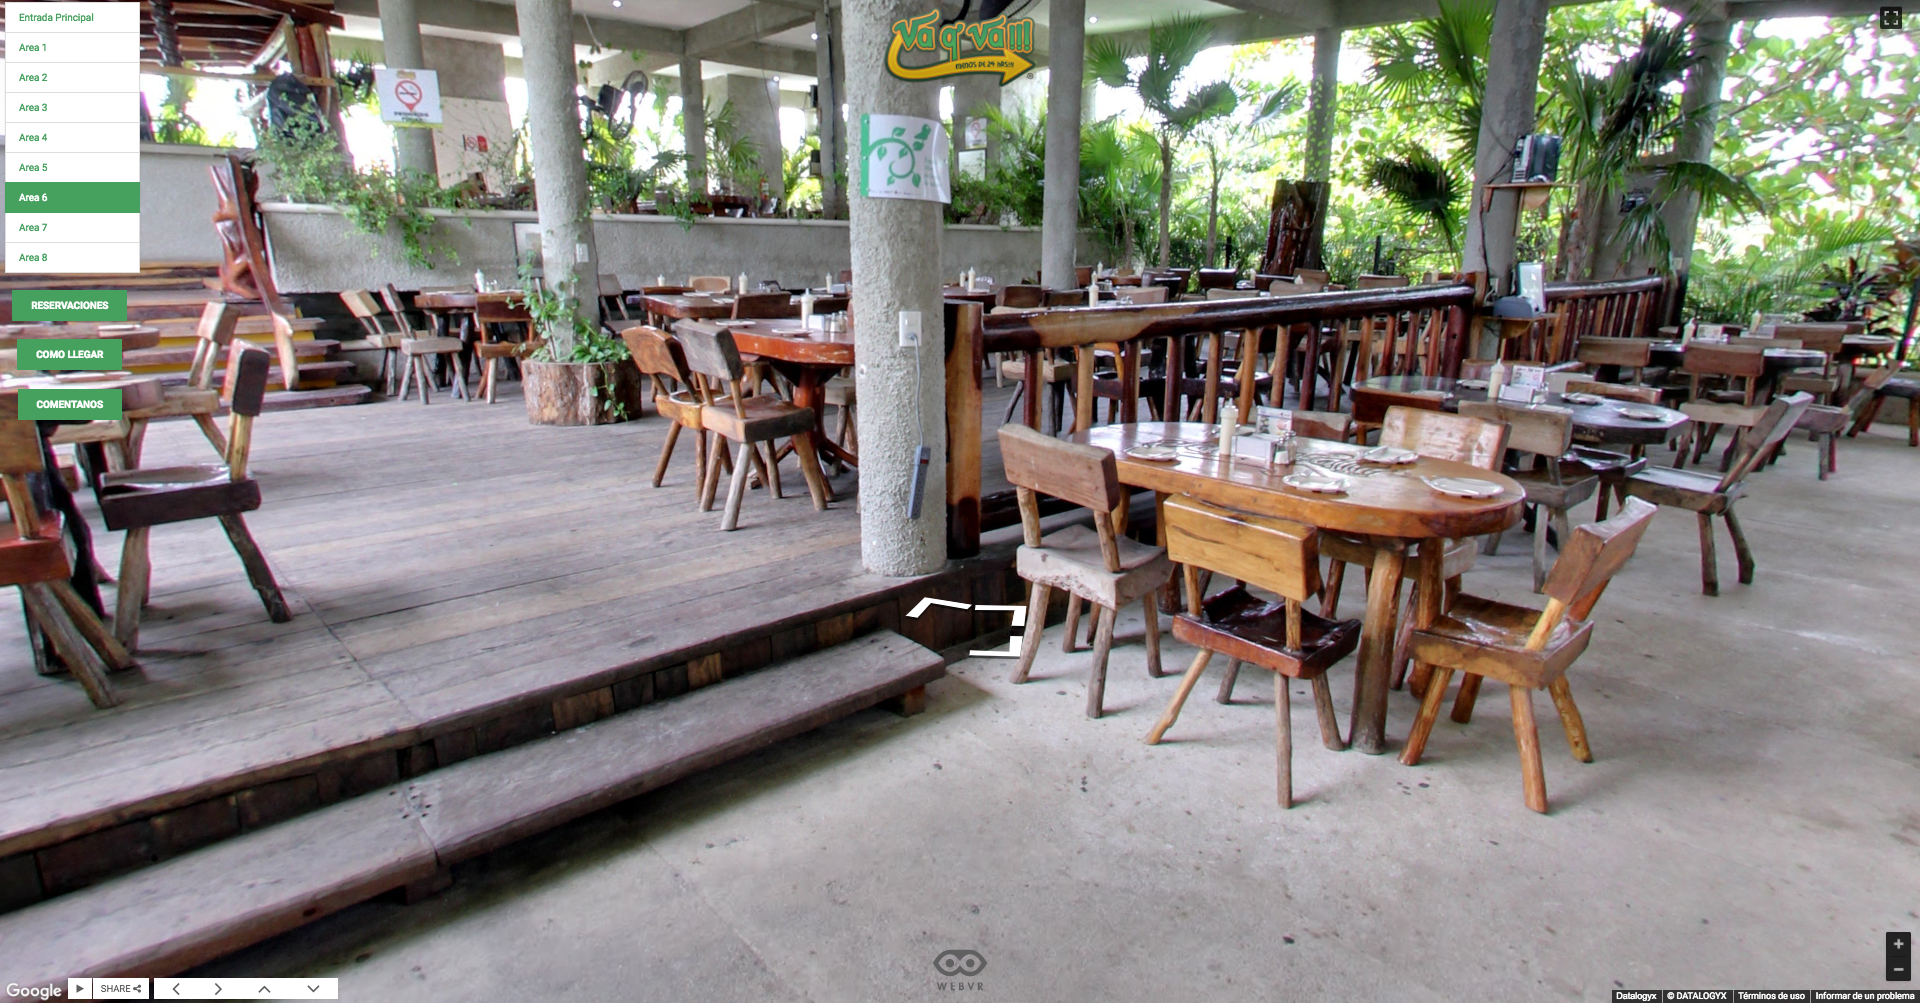 Hotel-restaurante-comida-maríscos-playa-cancun-recorrido-virtual-google-street-view-concesionaria-datalogyx